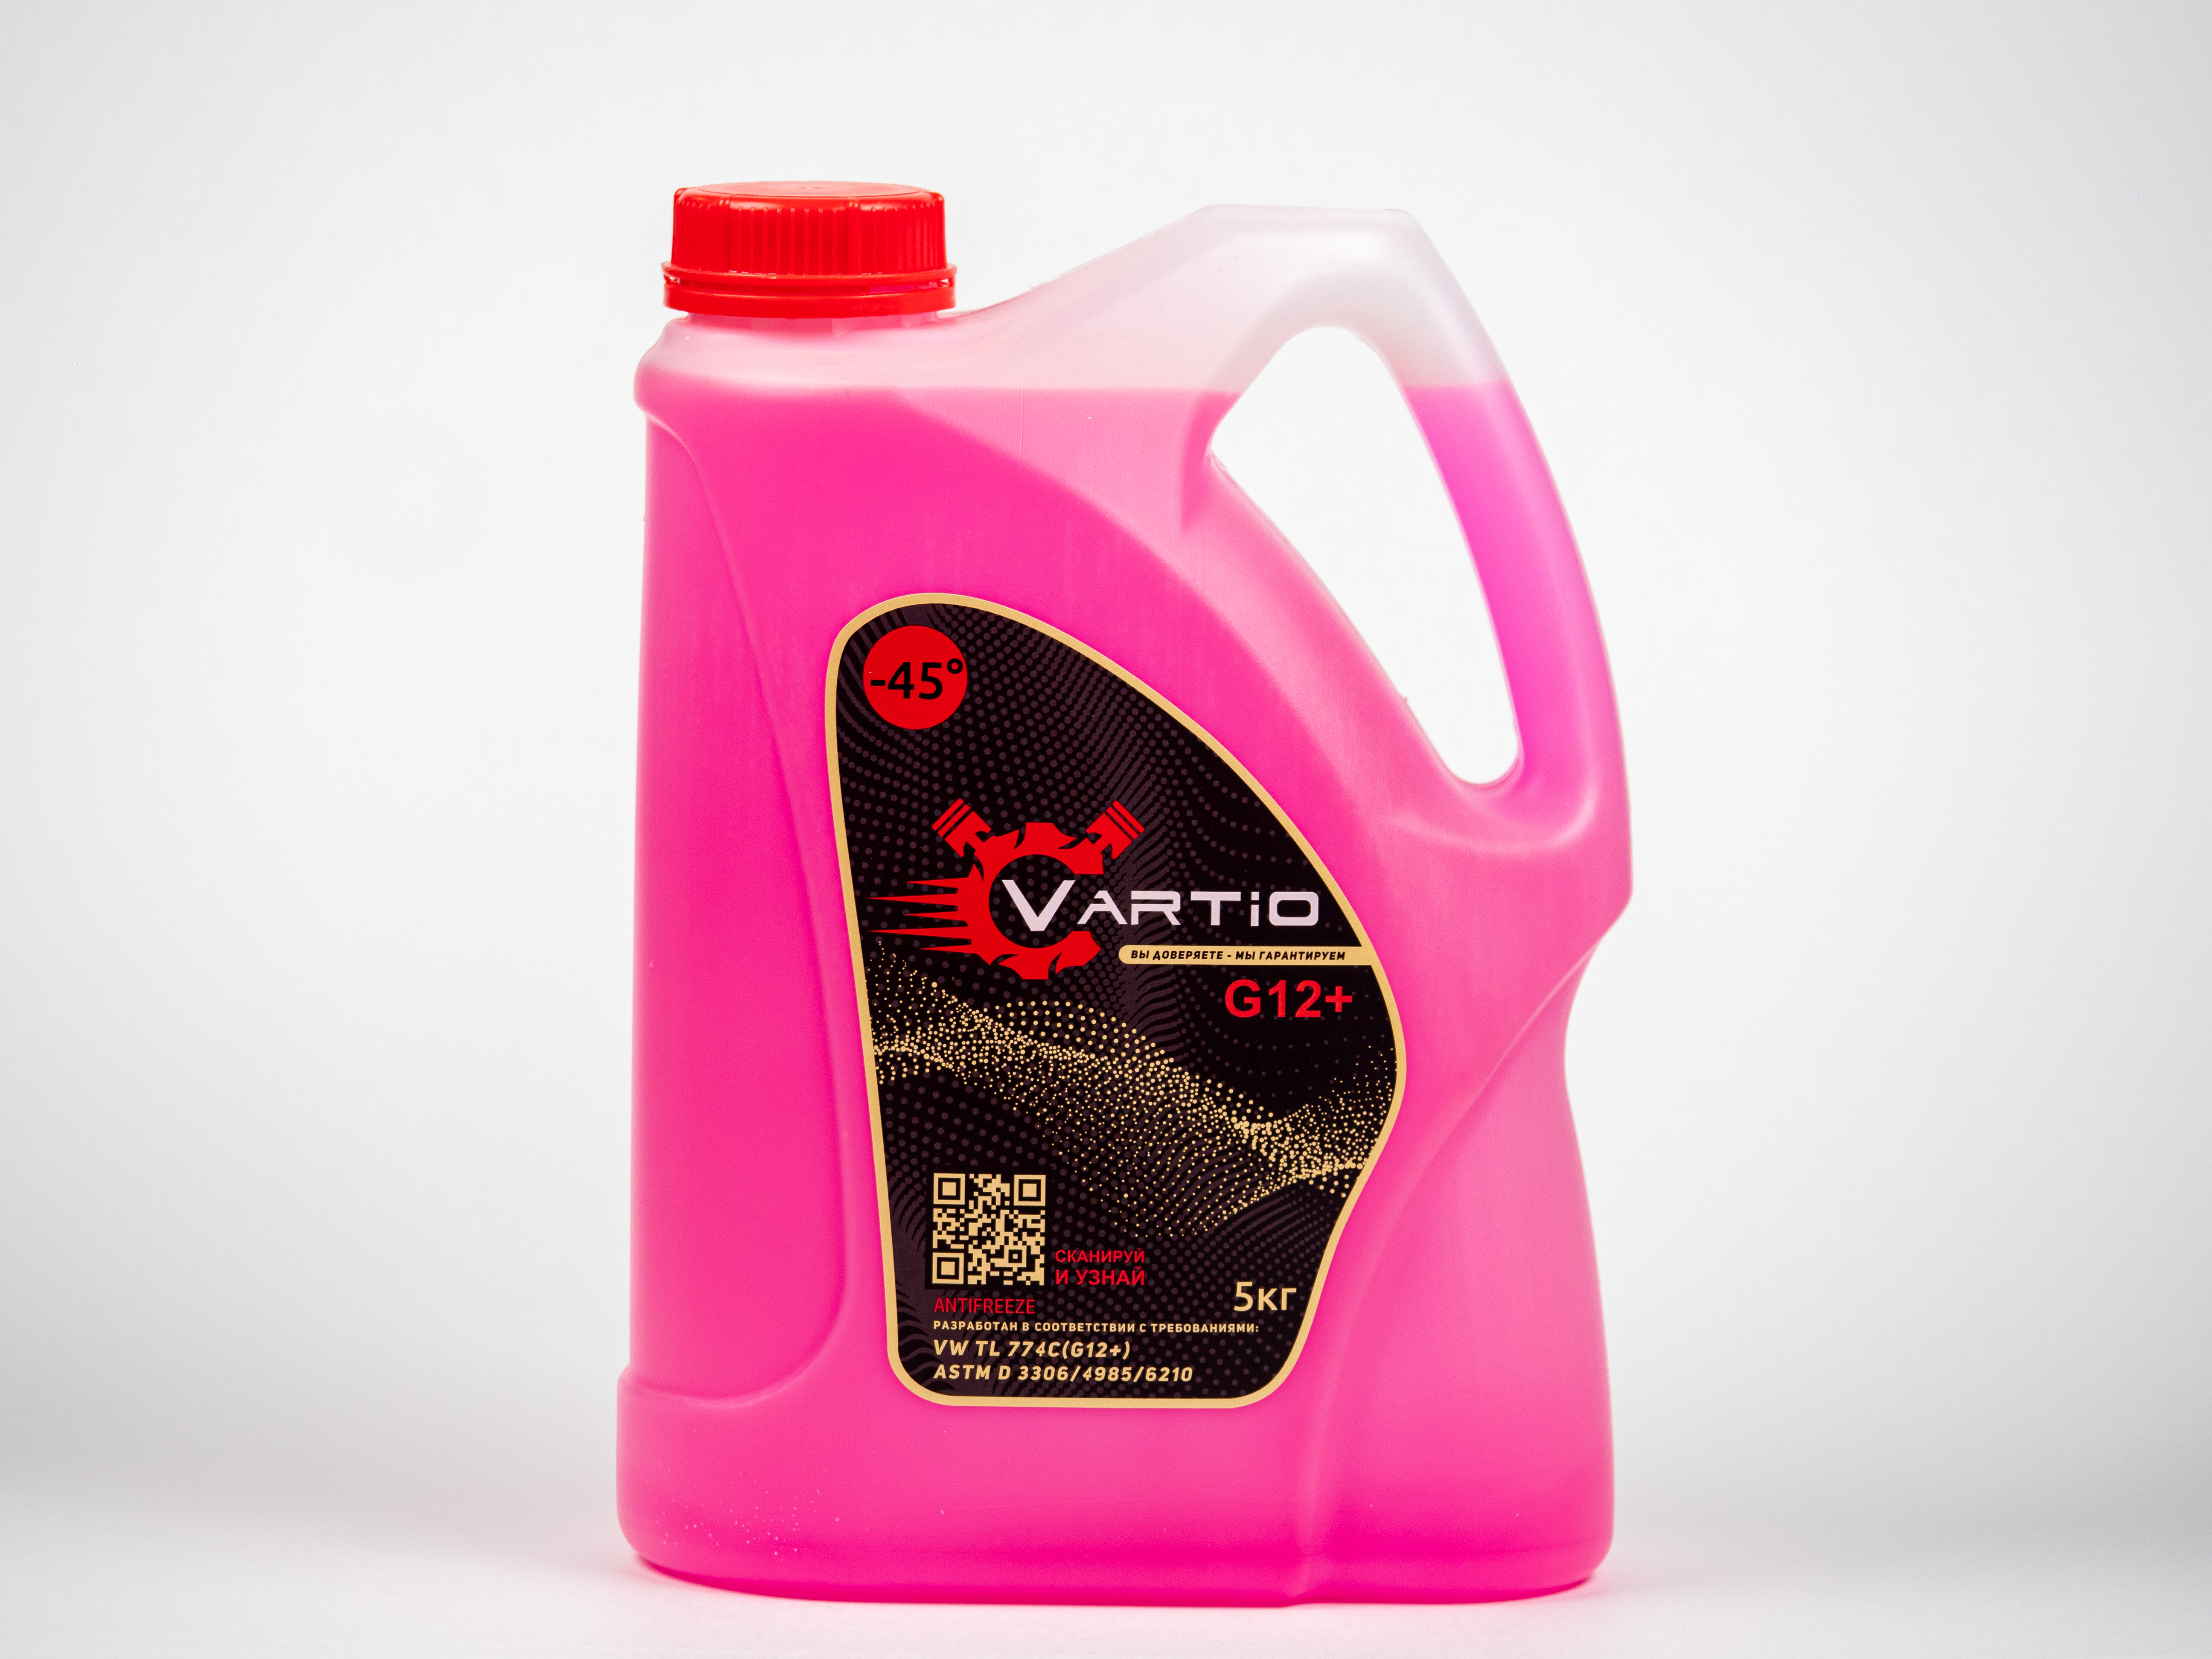 Антифриз Vartio G12+ (-45) красный(розовый) 5 кг